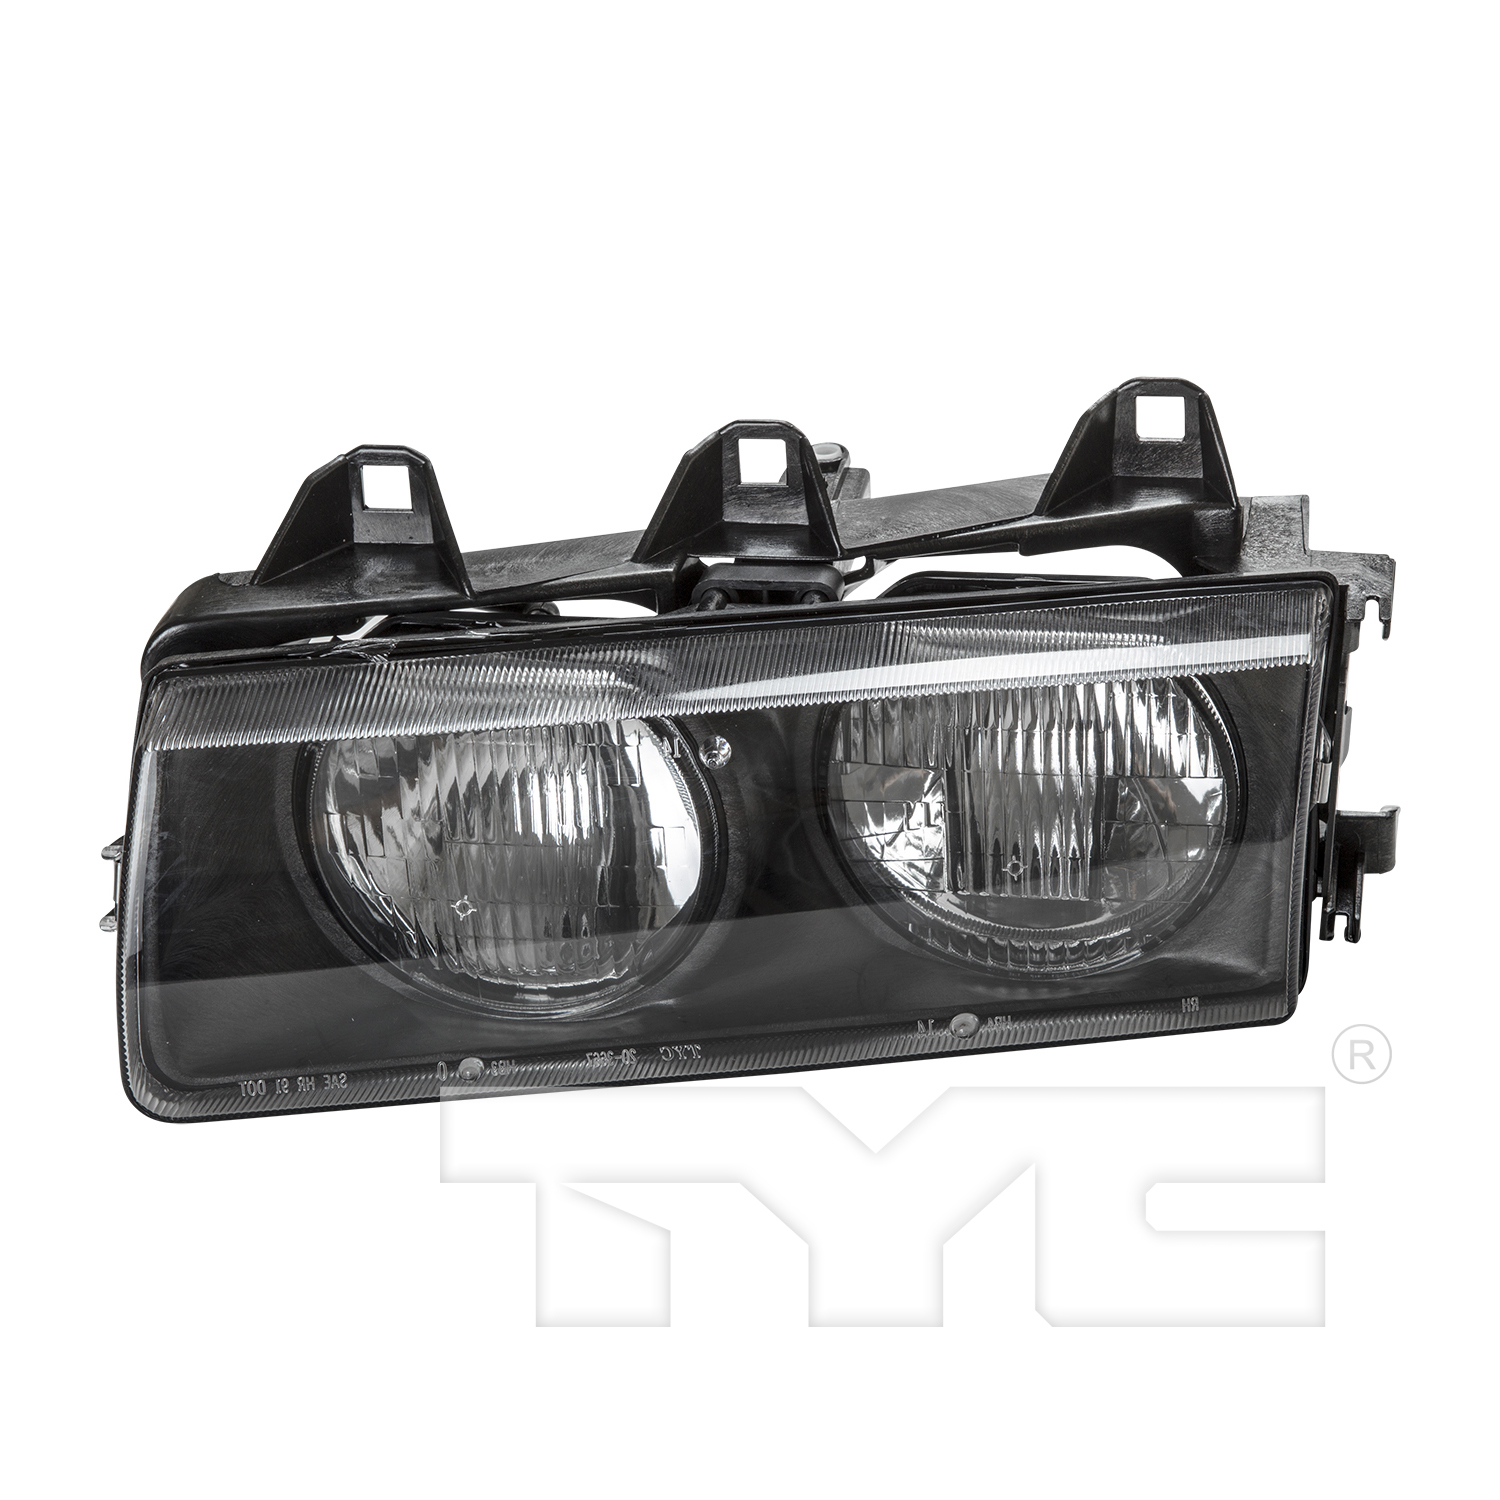 Aftermarket HEADLIGHTS for BMW - 325I, 325i,92-95,LT Headlamp assy composite